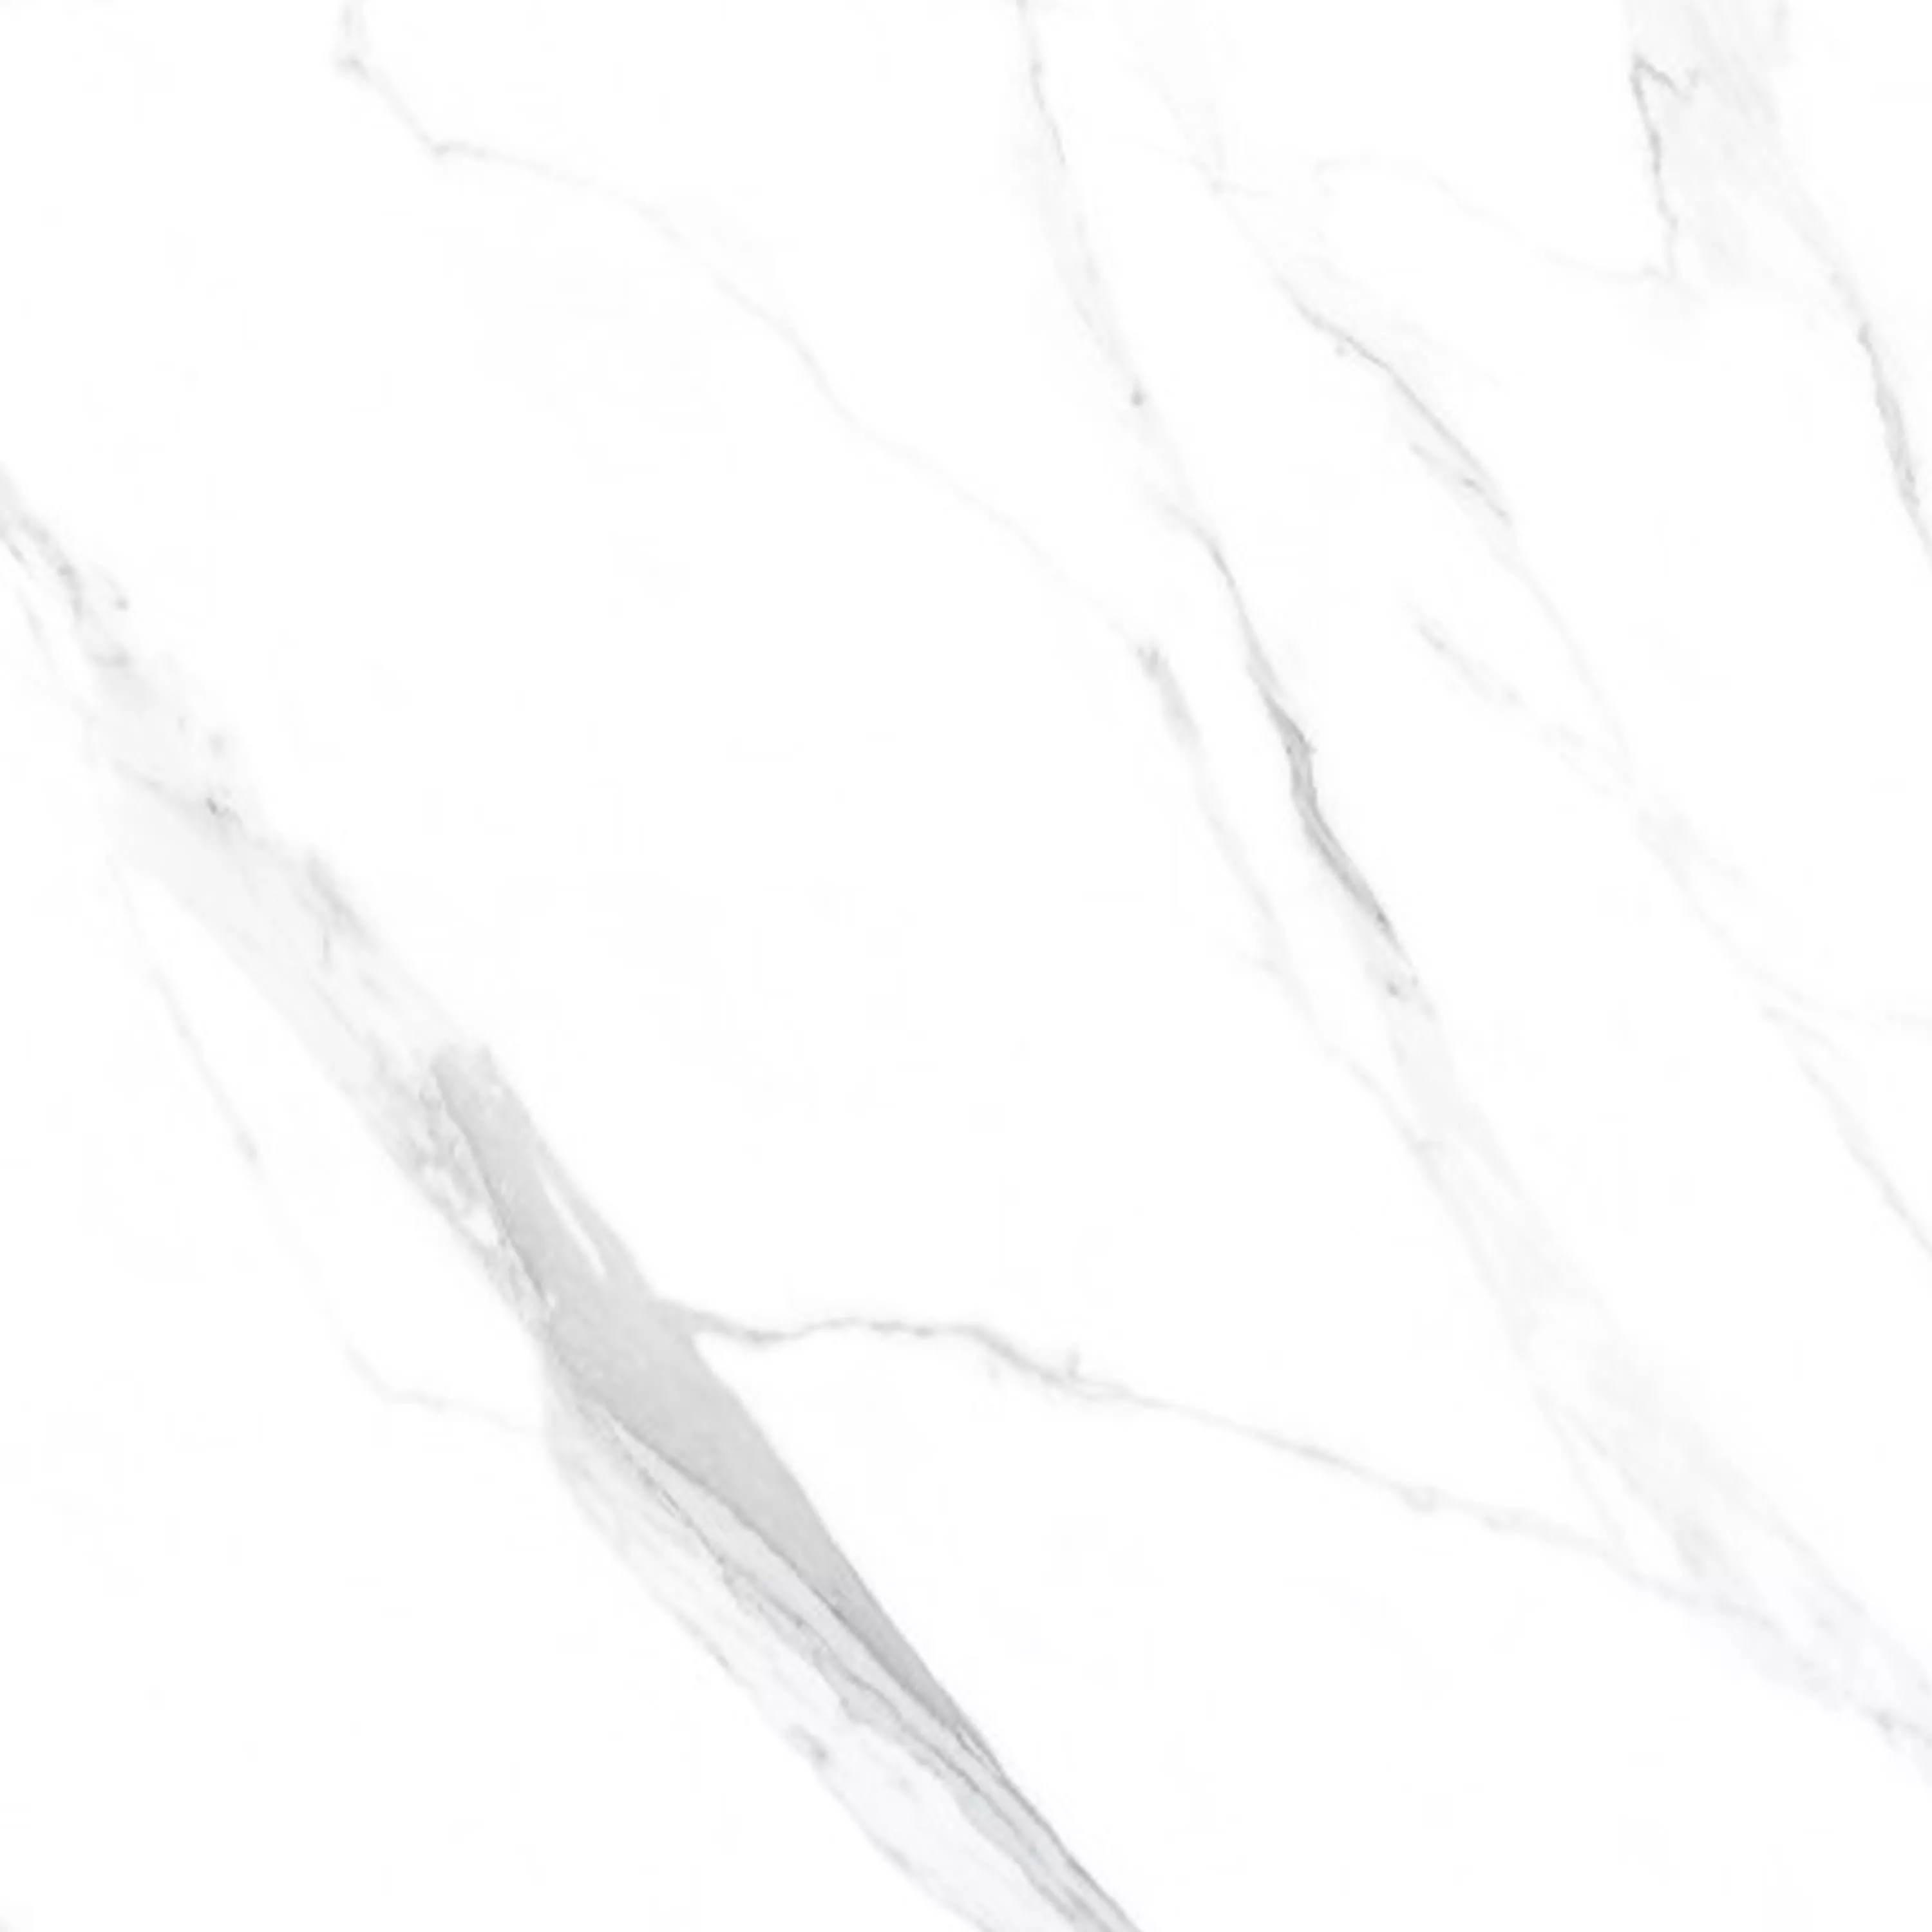 Πλακάκια Δαπέδου Serenity Μαρμάρινη Όψη Αμεμπτος Ασπρο 60x60cm